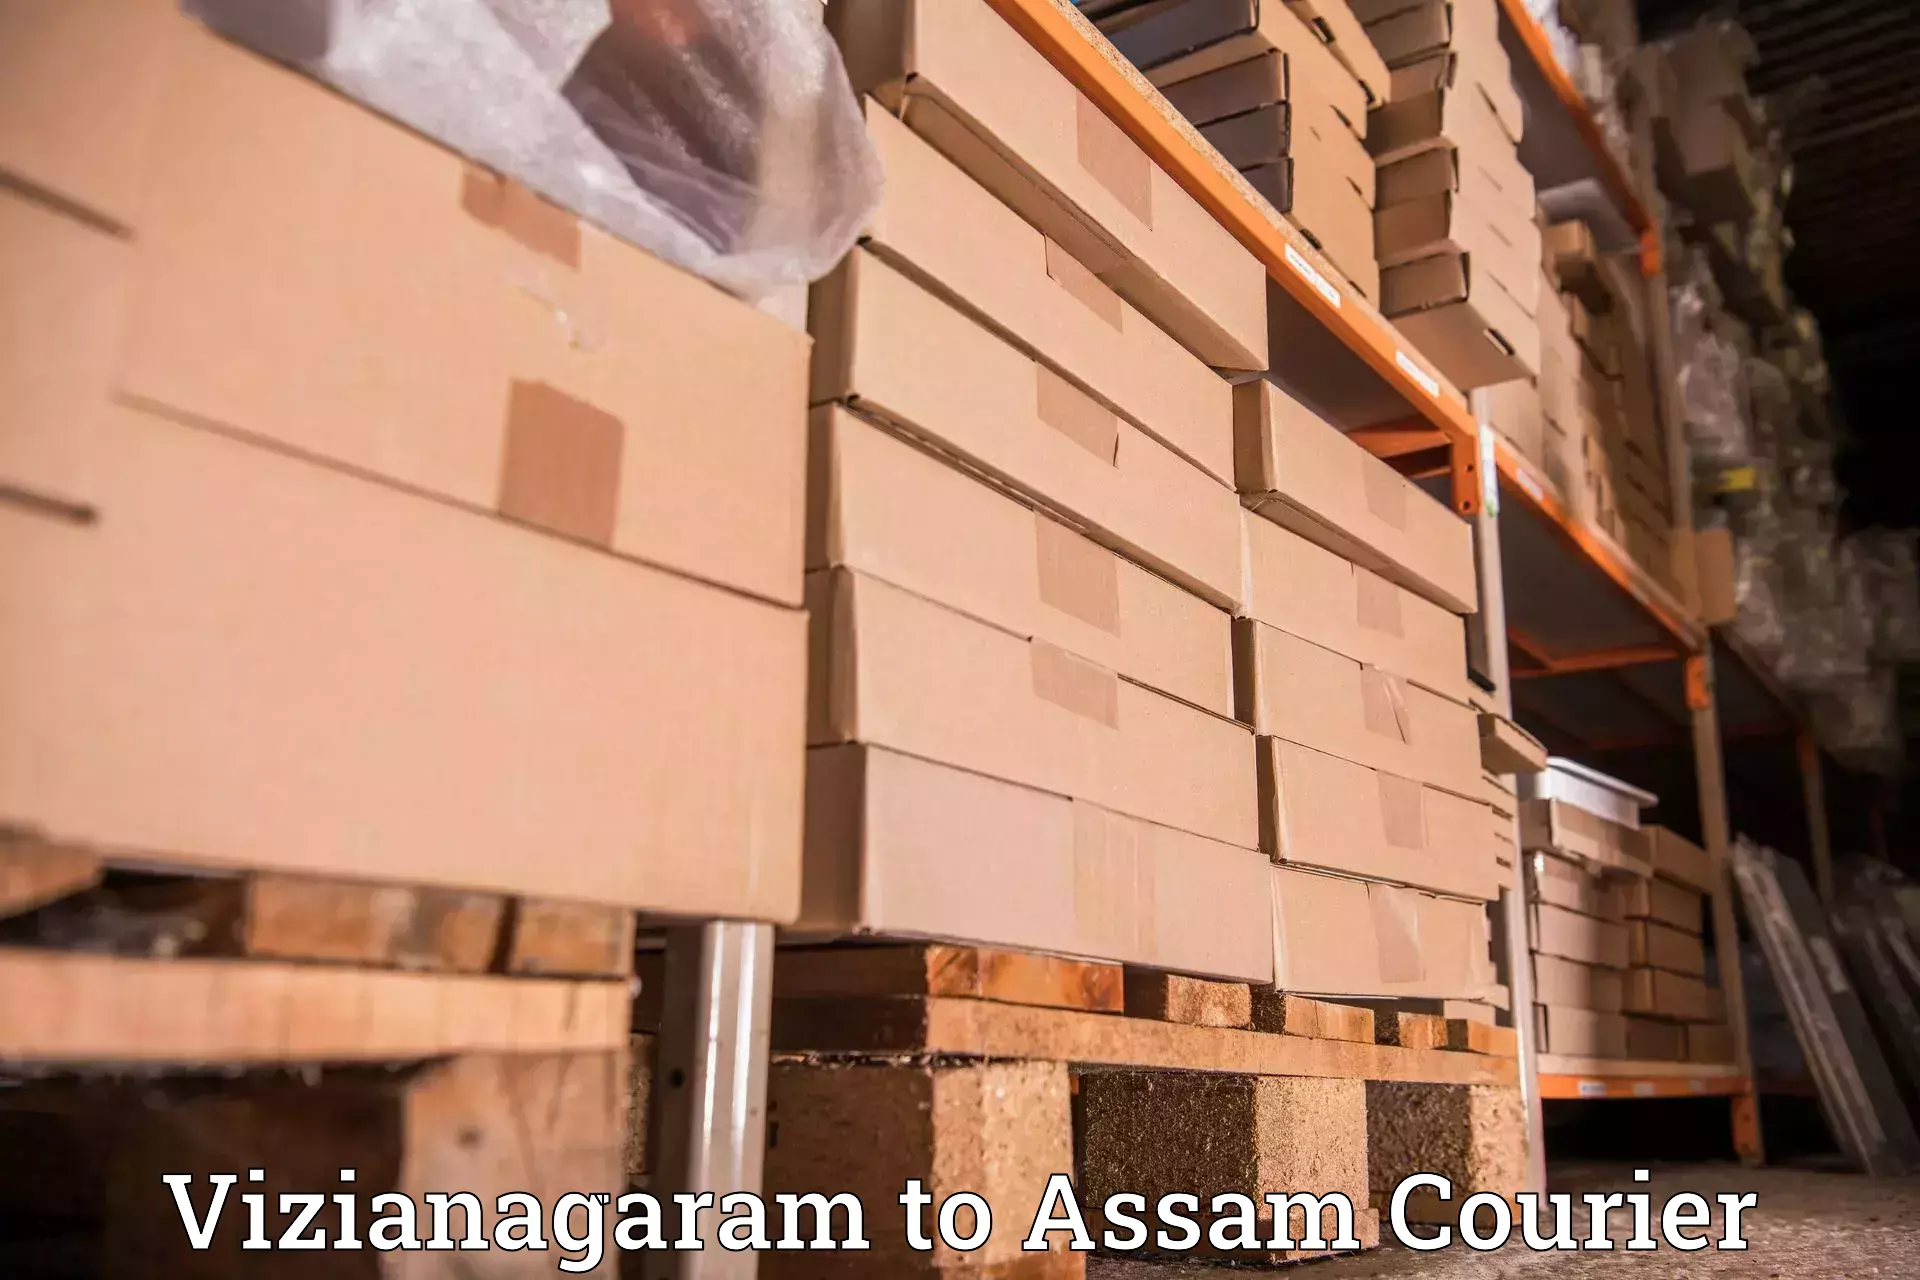 On-call courier service Vizianagaram to Assam